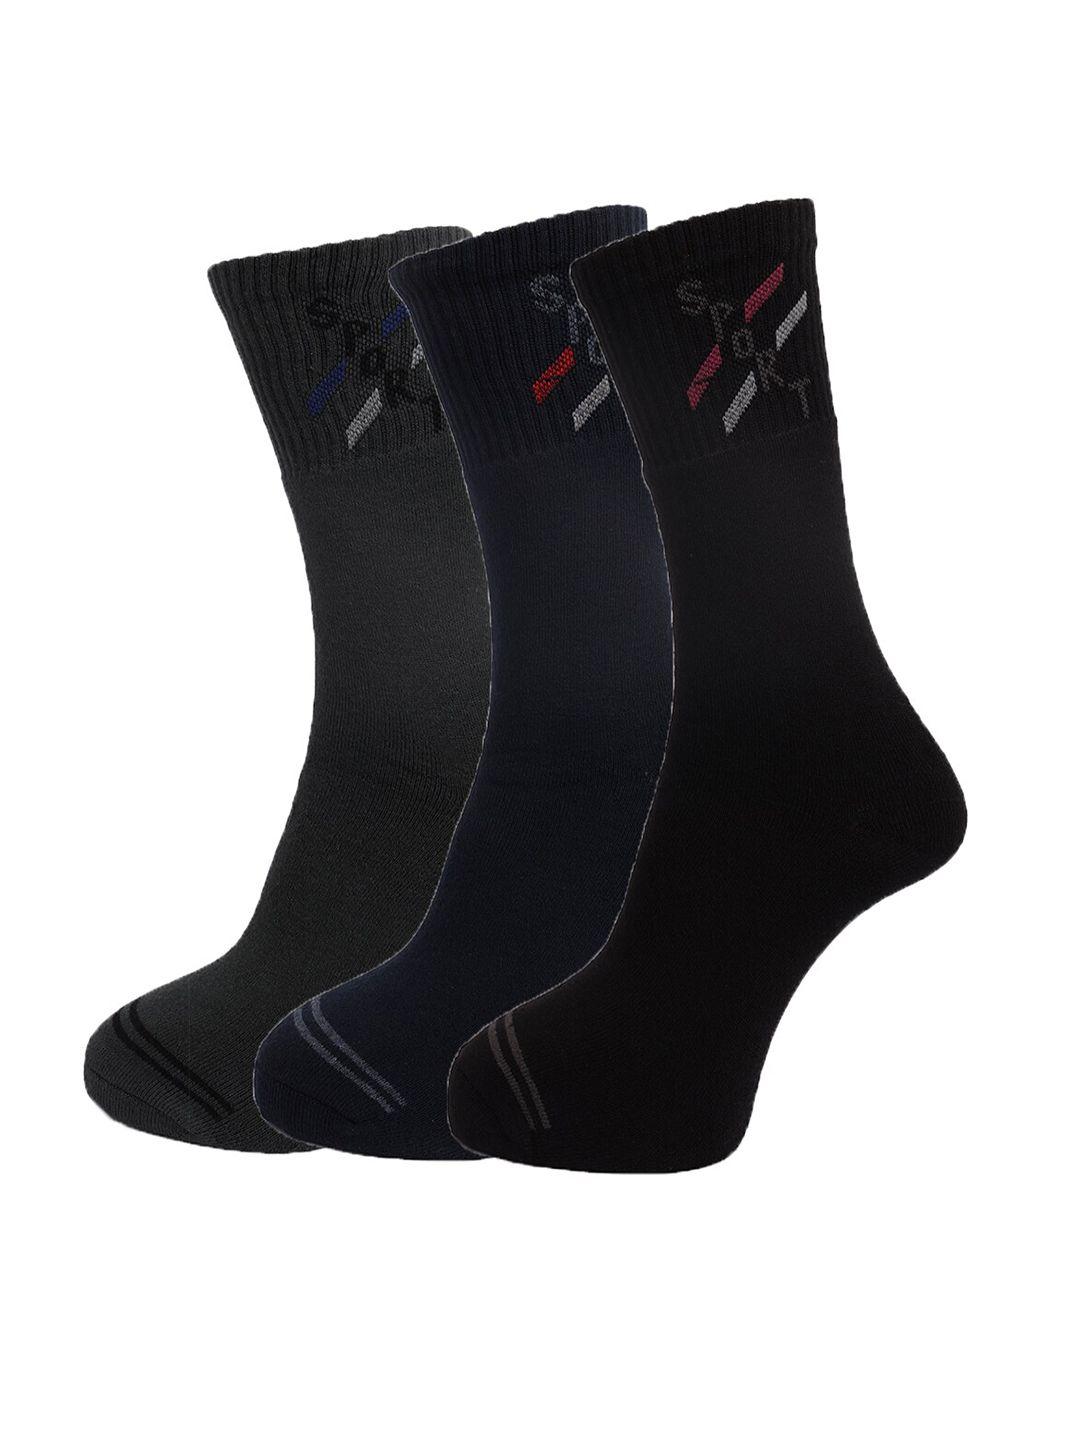 dollar-socks-men-pack-of-3-assorted-cotton-above-ankle-length-socks